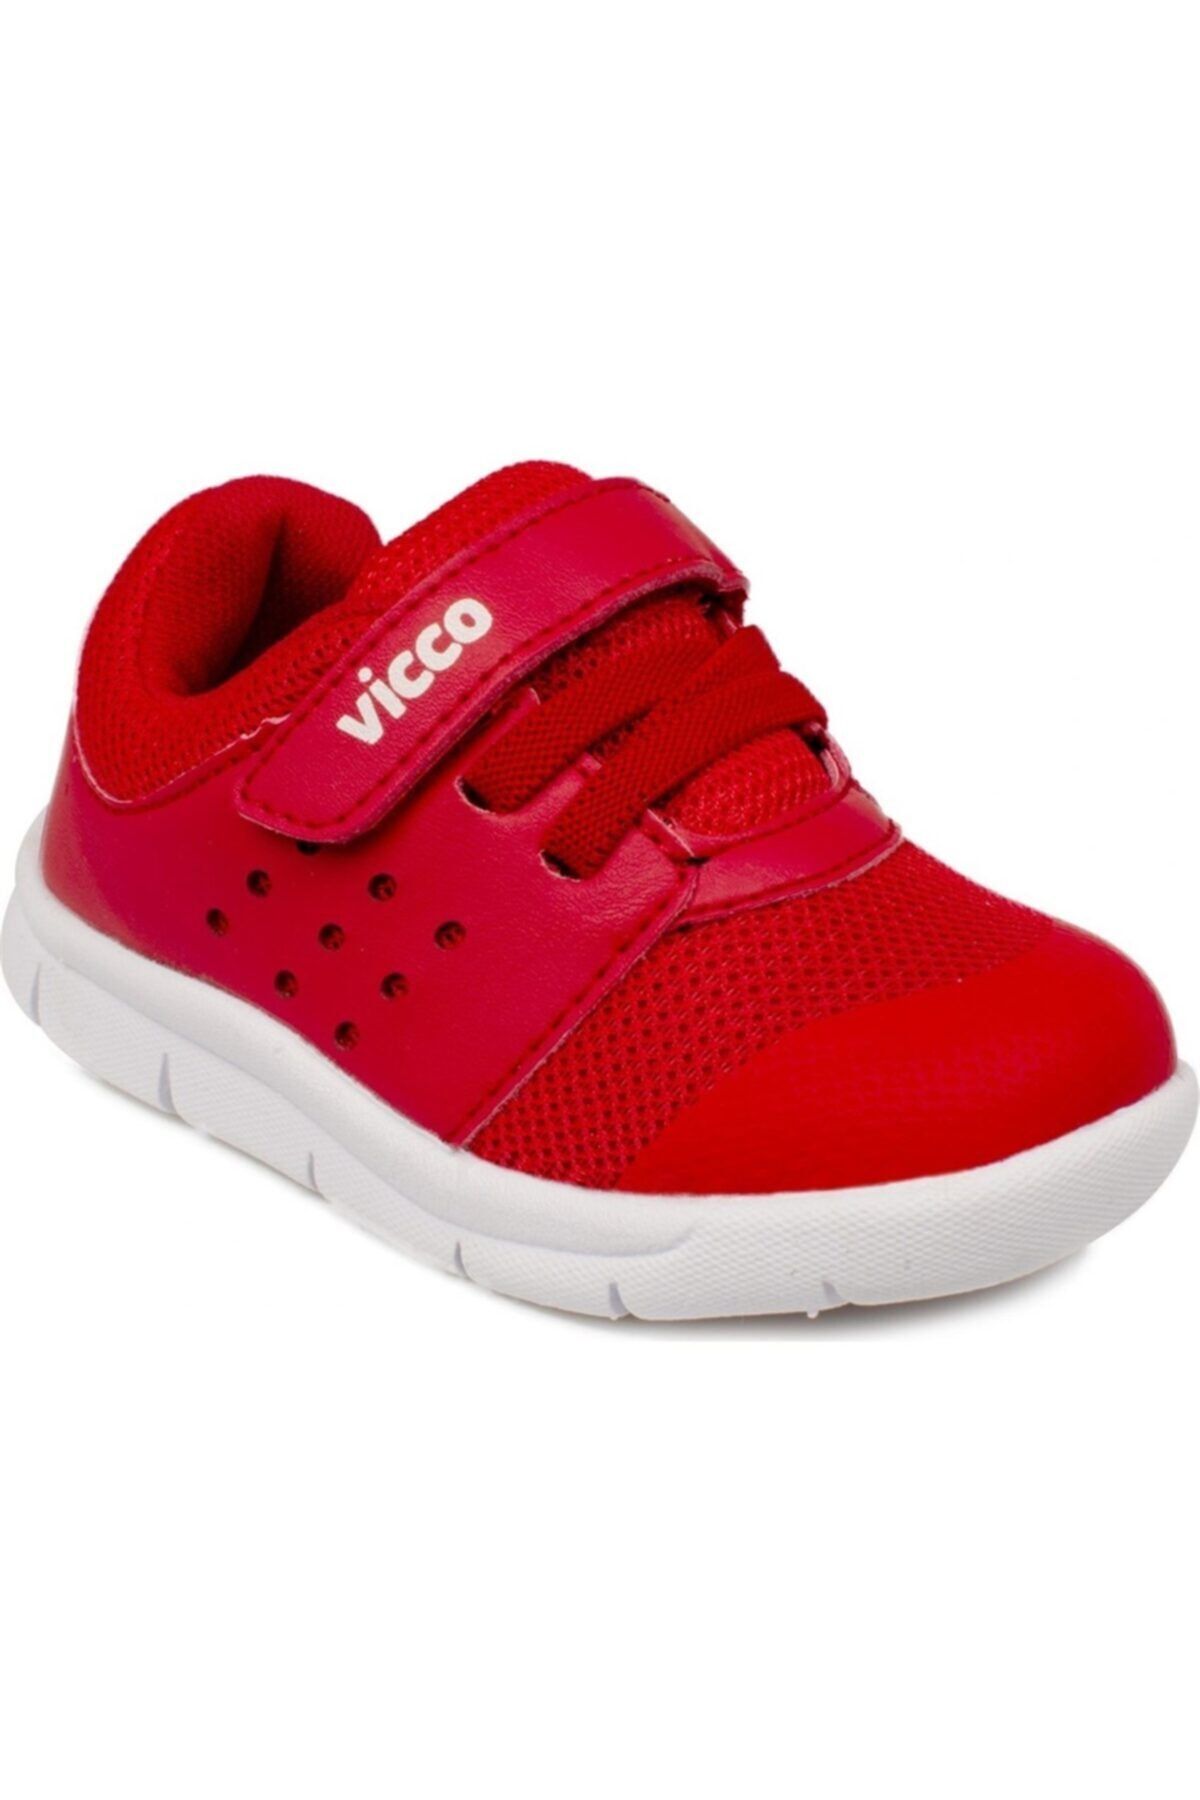 Vicco 346.p20y.200 Patik Phylon Kırmızı Çocuk Spor Ayakkabı